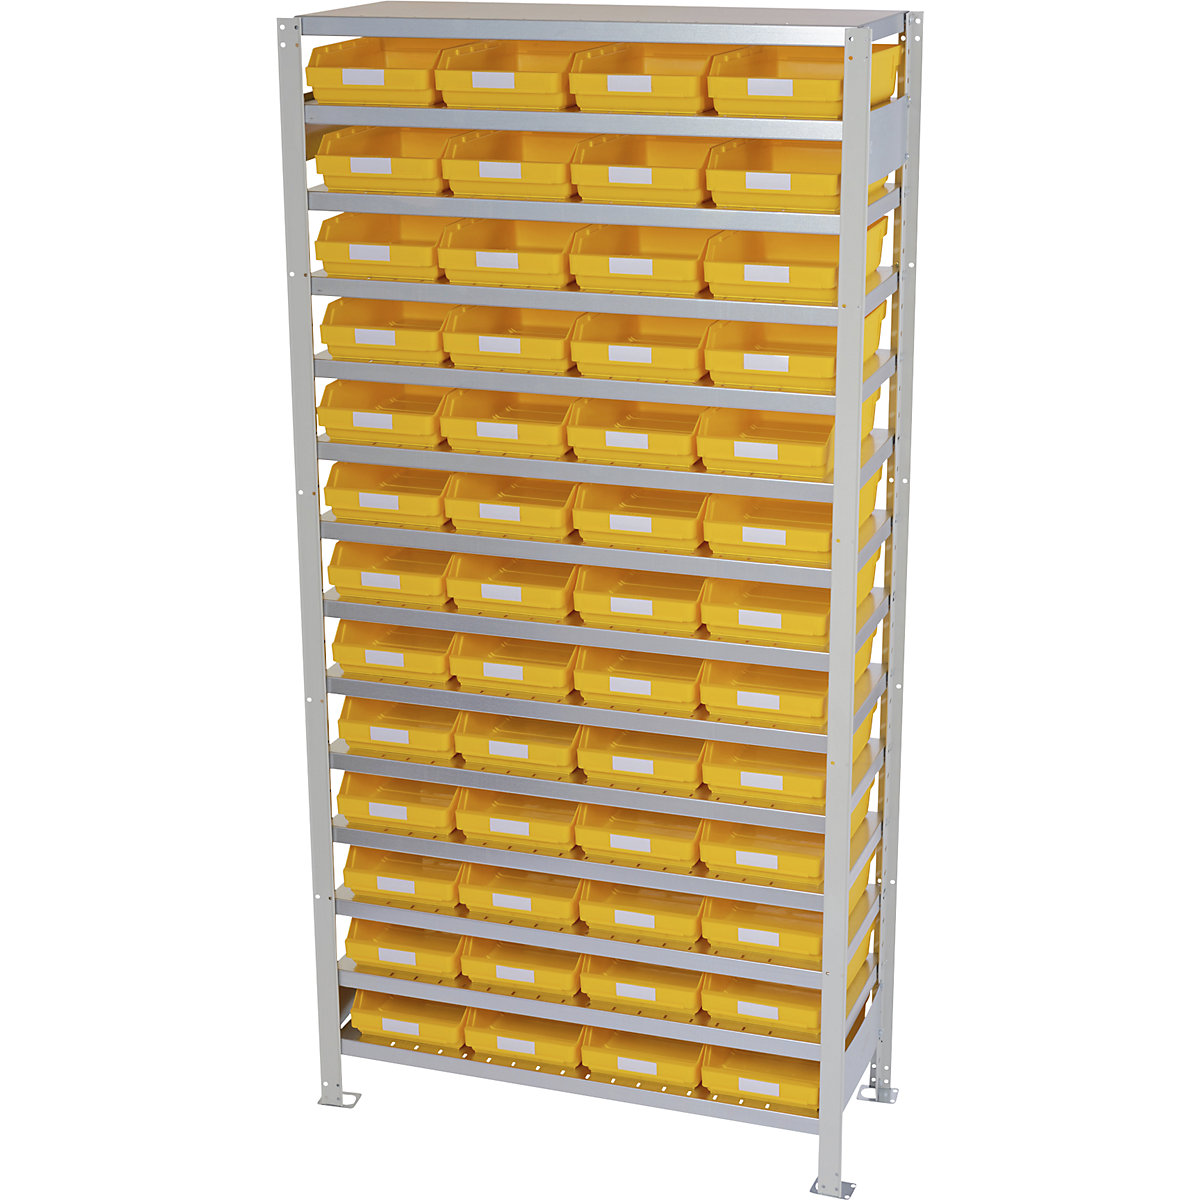 Estante de encaixar com caixas para estante – STEMO, altura da estante 2100 mm, estante básica, profundidade 500 mm, 52 caixas amarelas-16